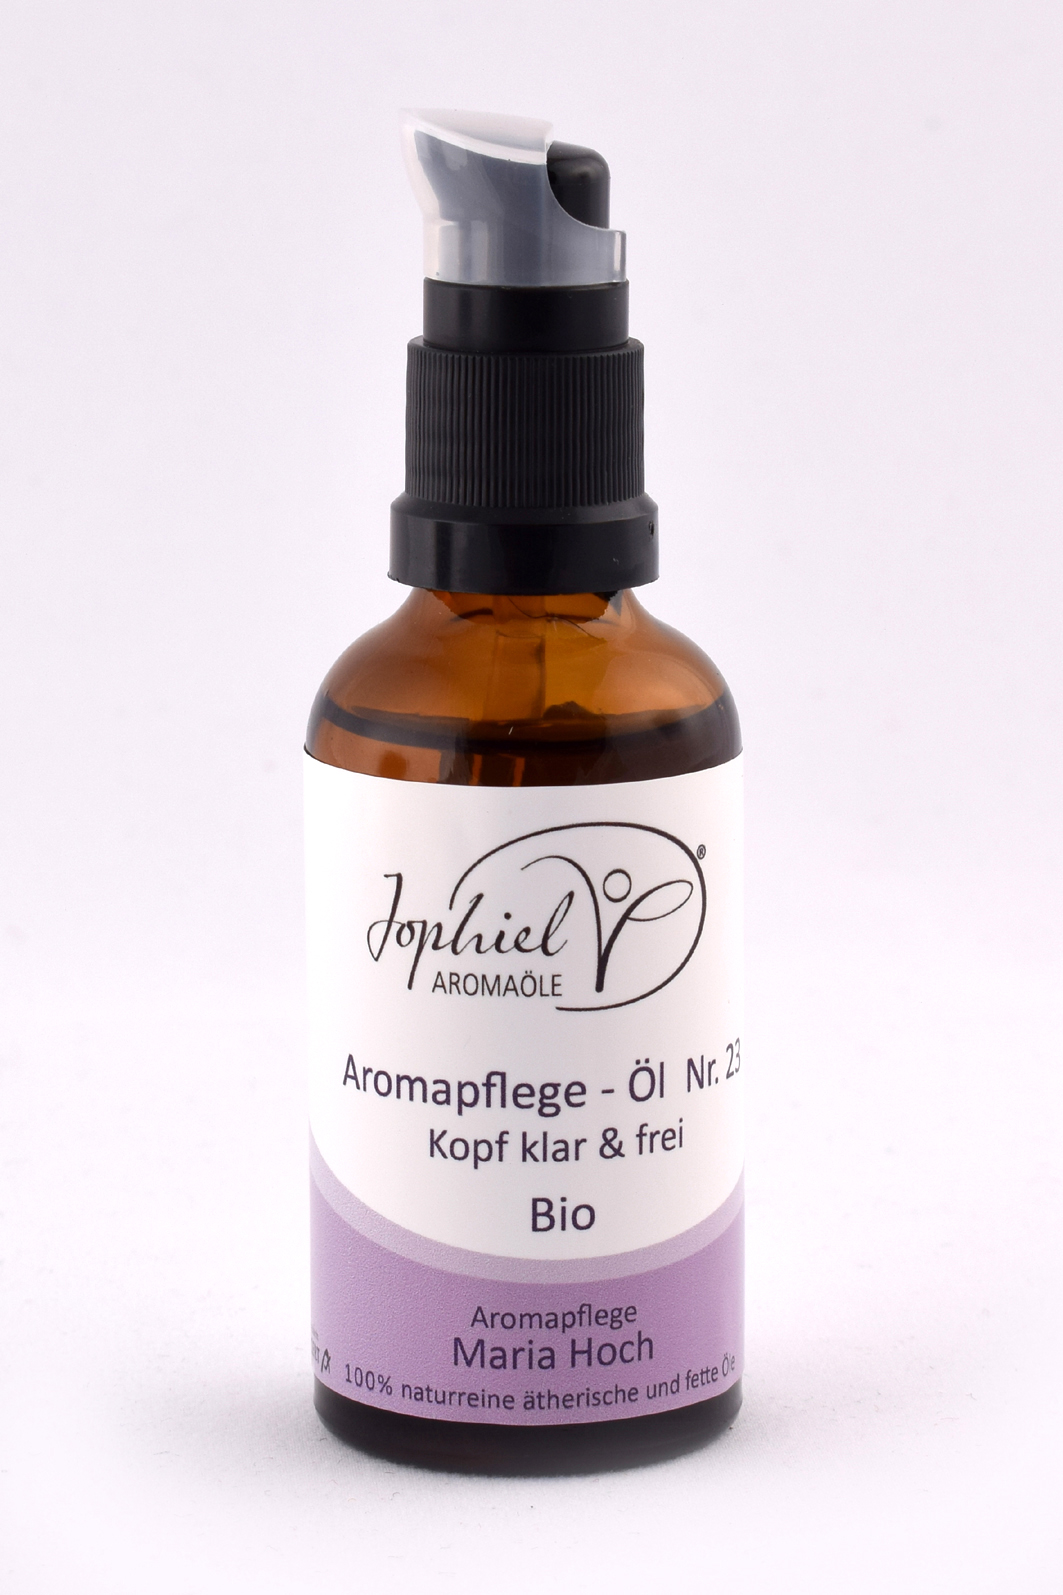 Aromapflege-Öl Nr. 23 Kopf klar & frei Bio 50 ml